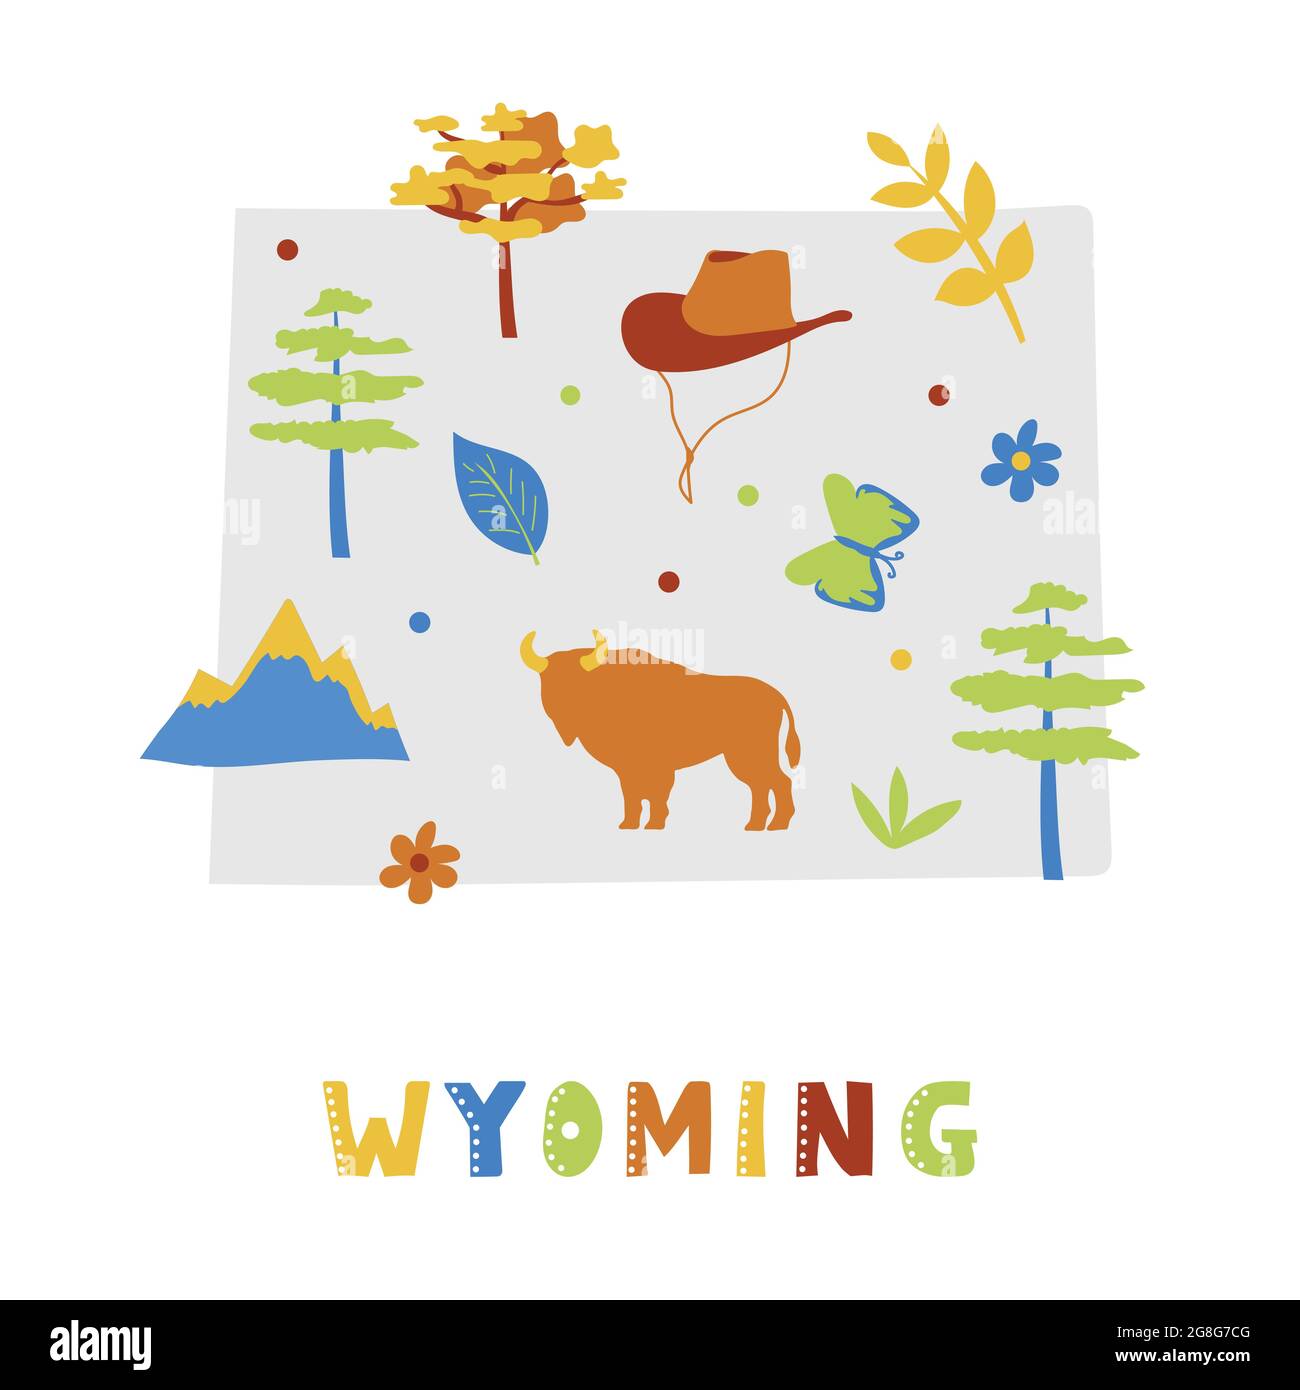 Collection de cartes des États-Unis. Symboles d'état et nature sur la silhouette grise de l'état - Wyoming. Style de dessin animé simple pour l'impression Illustration de Vecteur